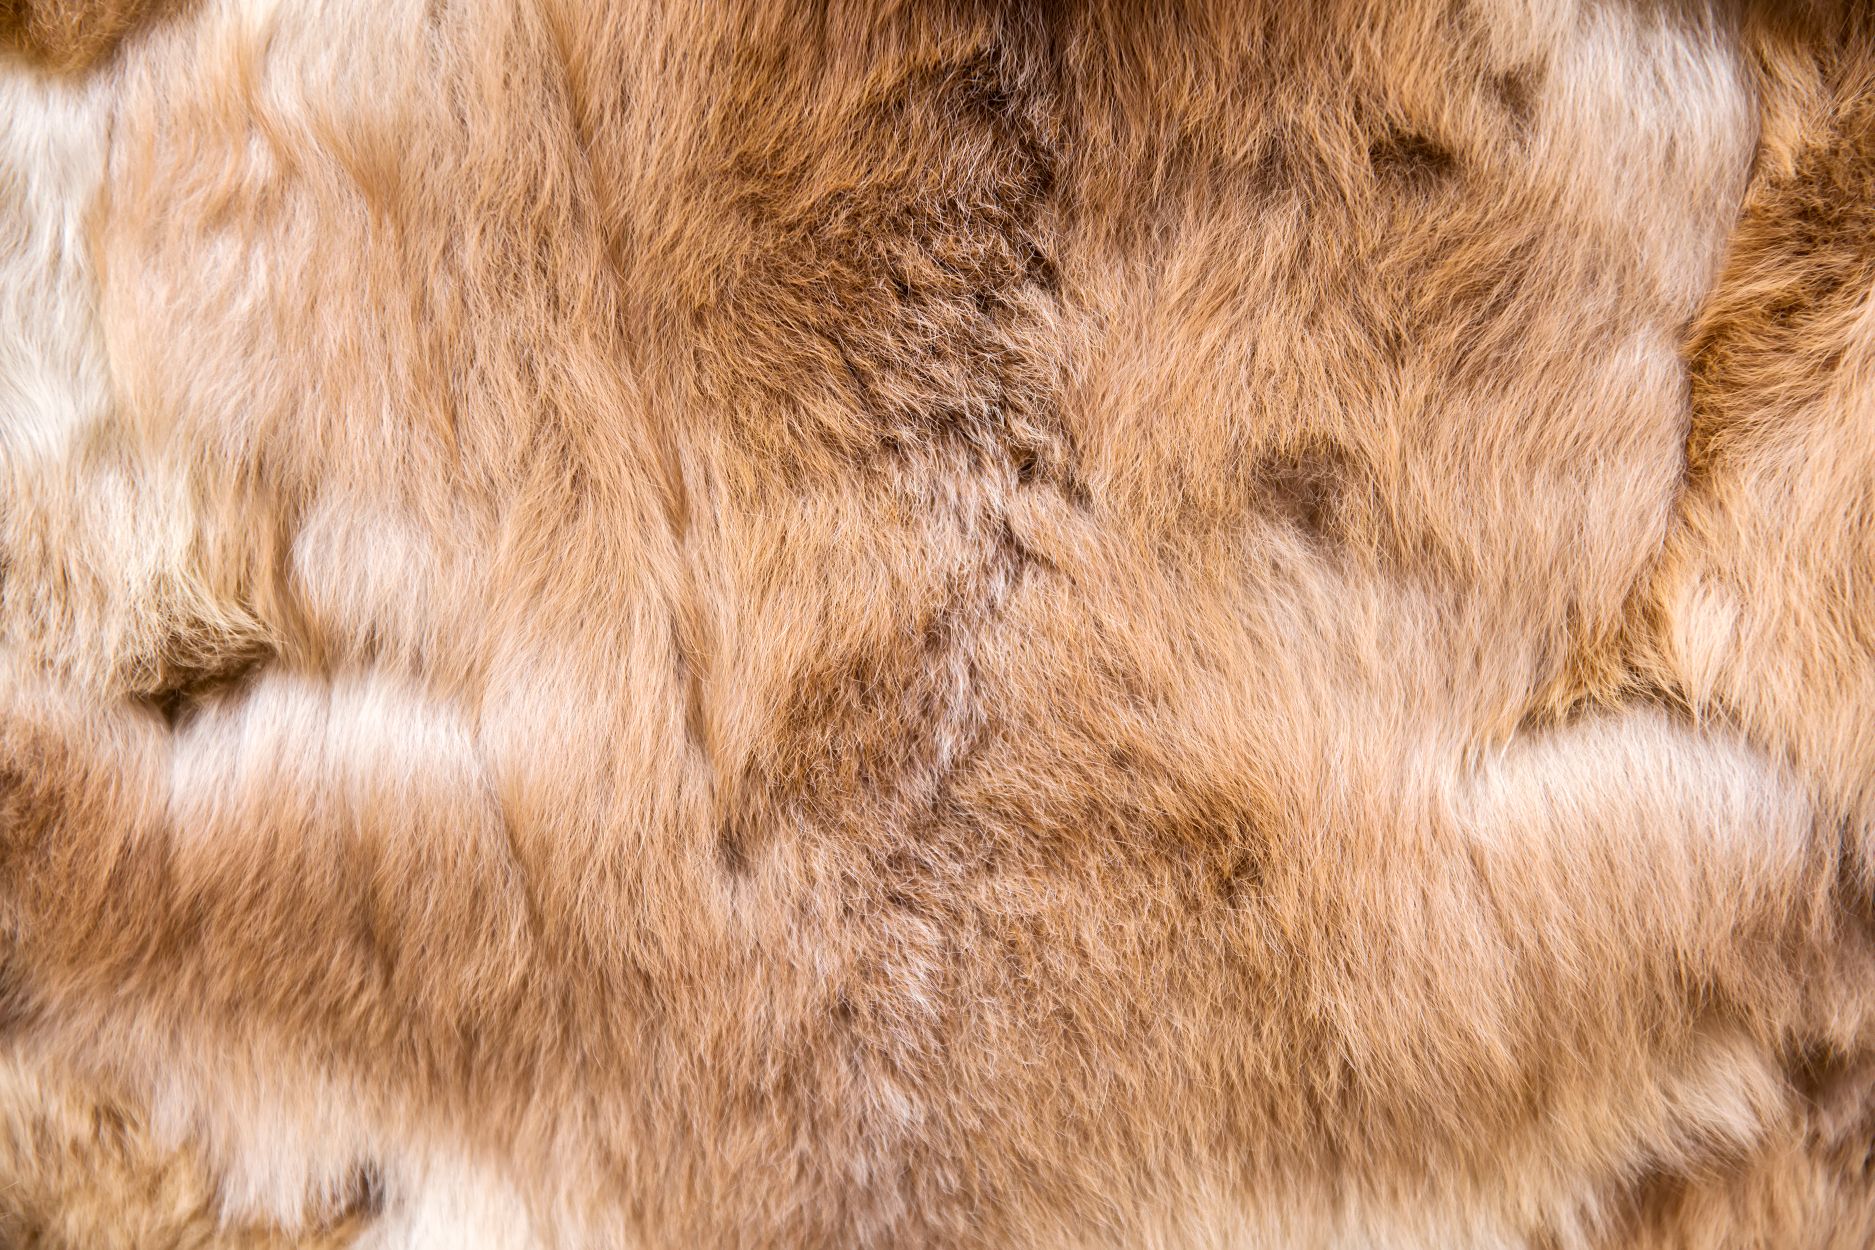 Next Gen Animal Fur - Material Innovation